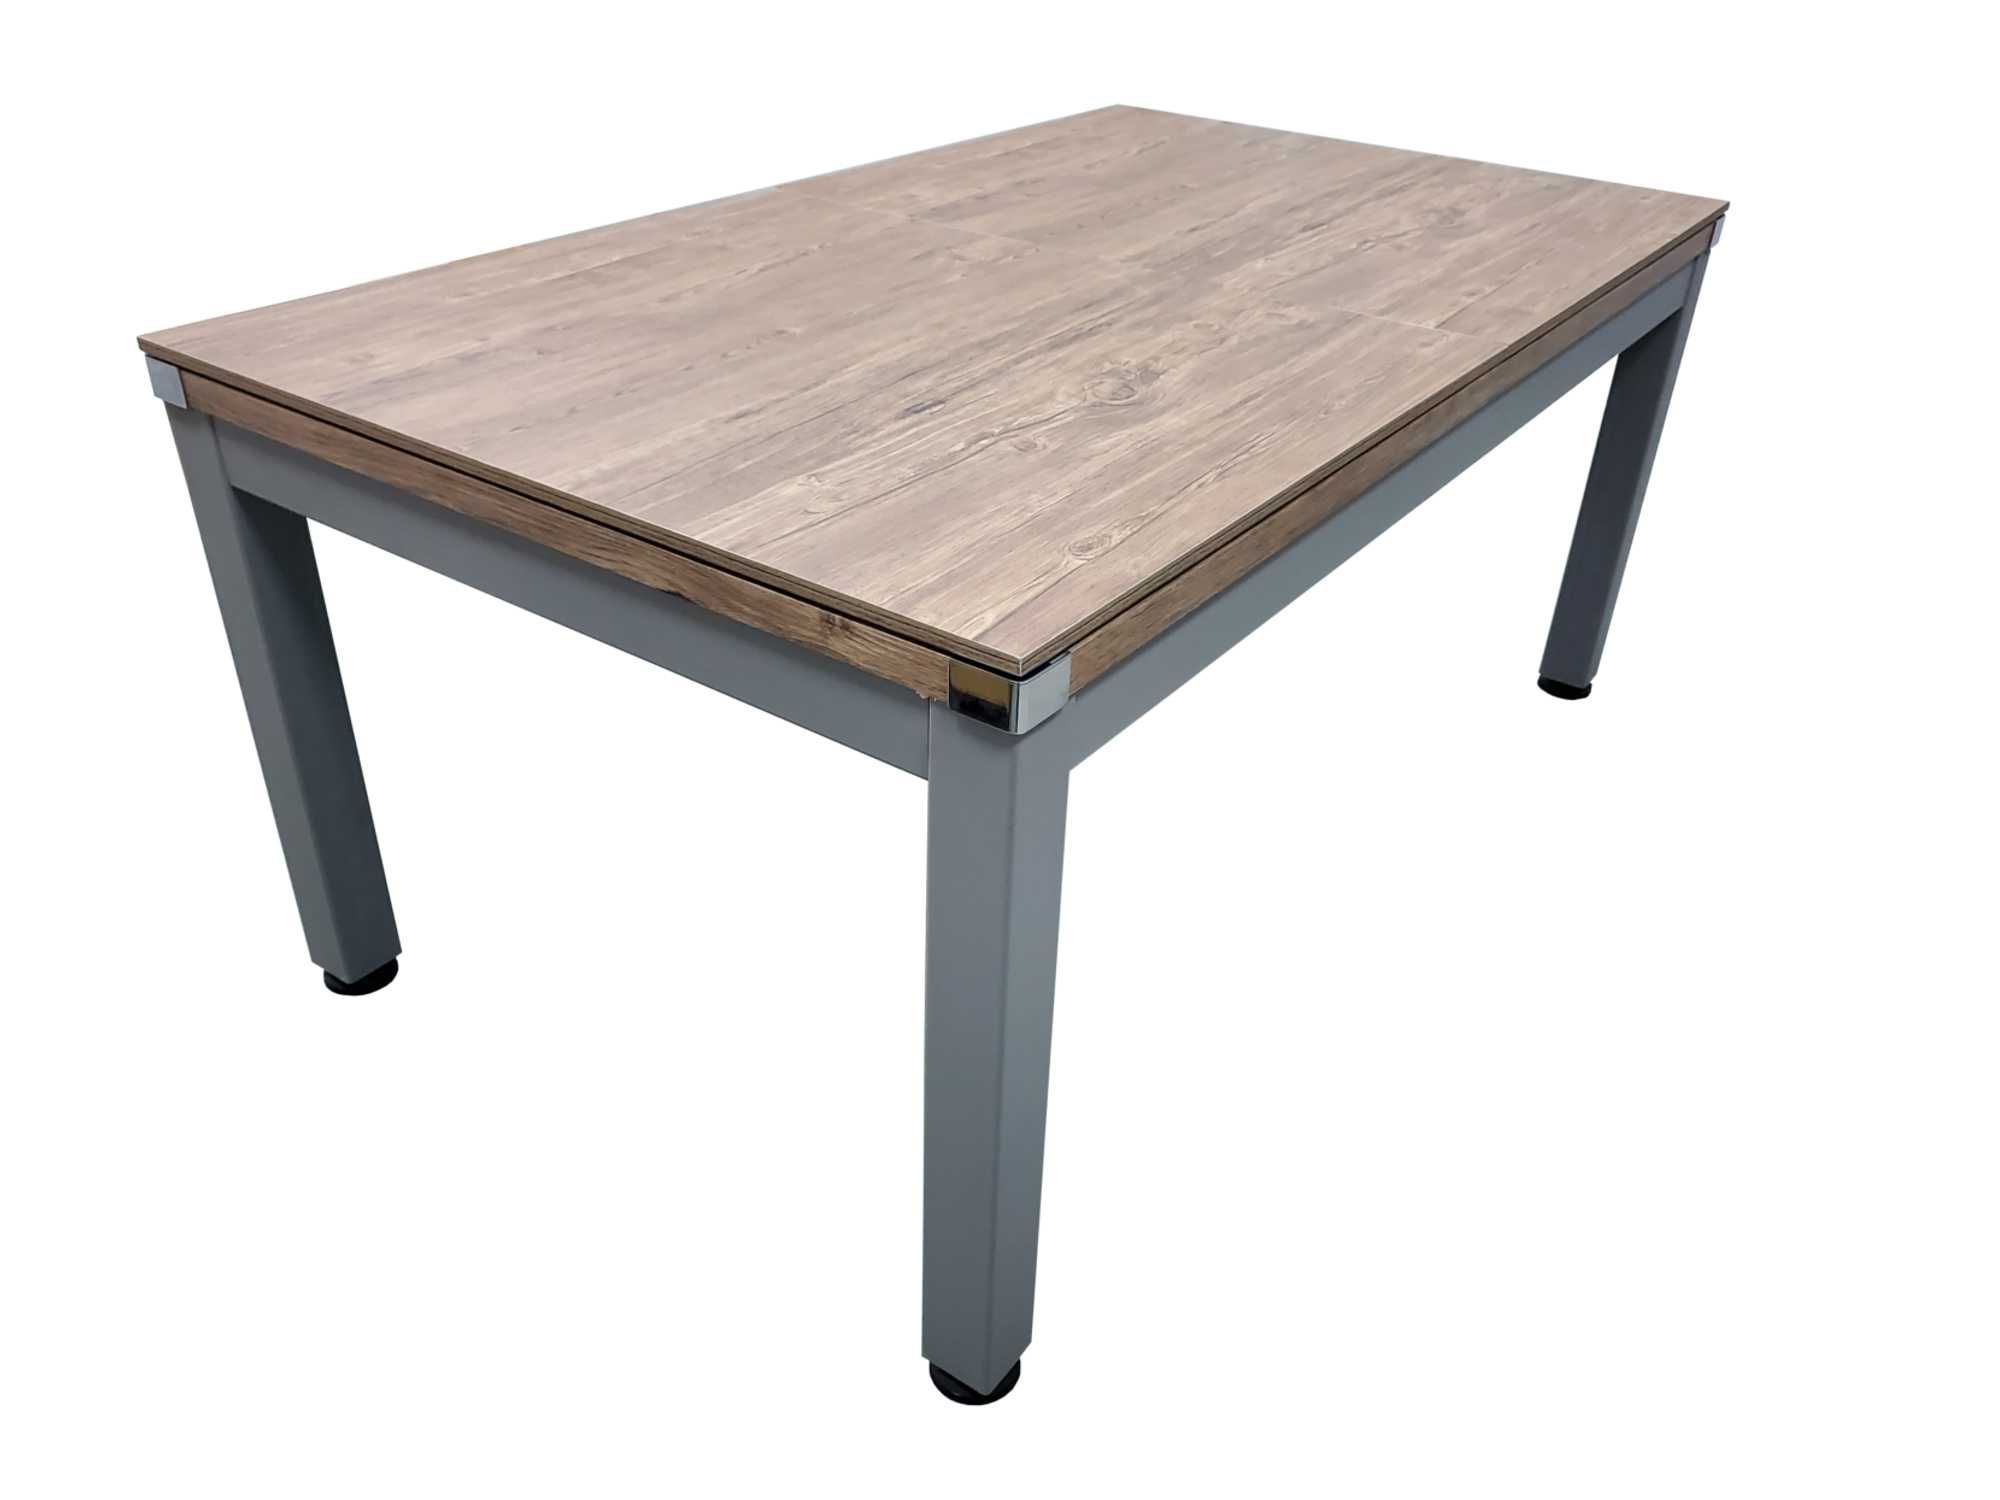 Stół bilardowy, stalowy, Modern Classic 7FT 3 w 1, tenis stołowy, stół